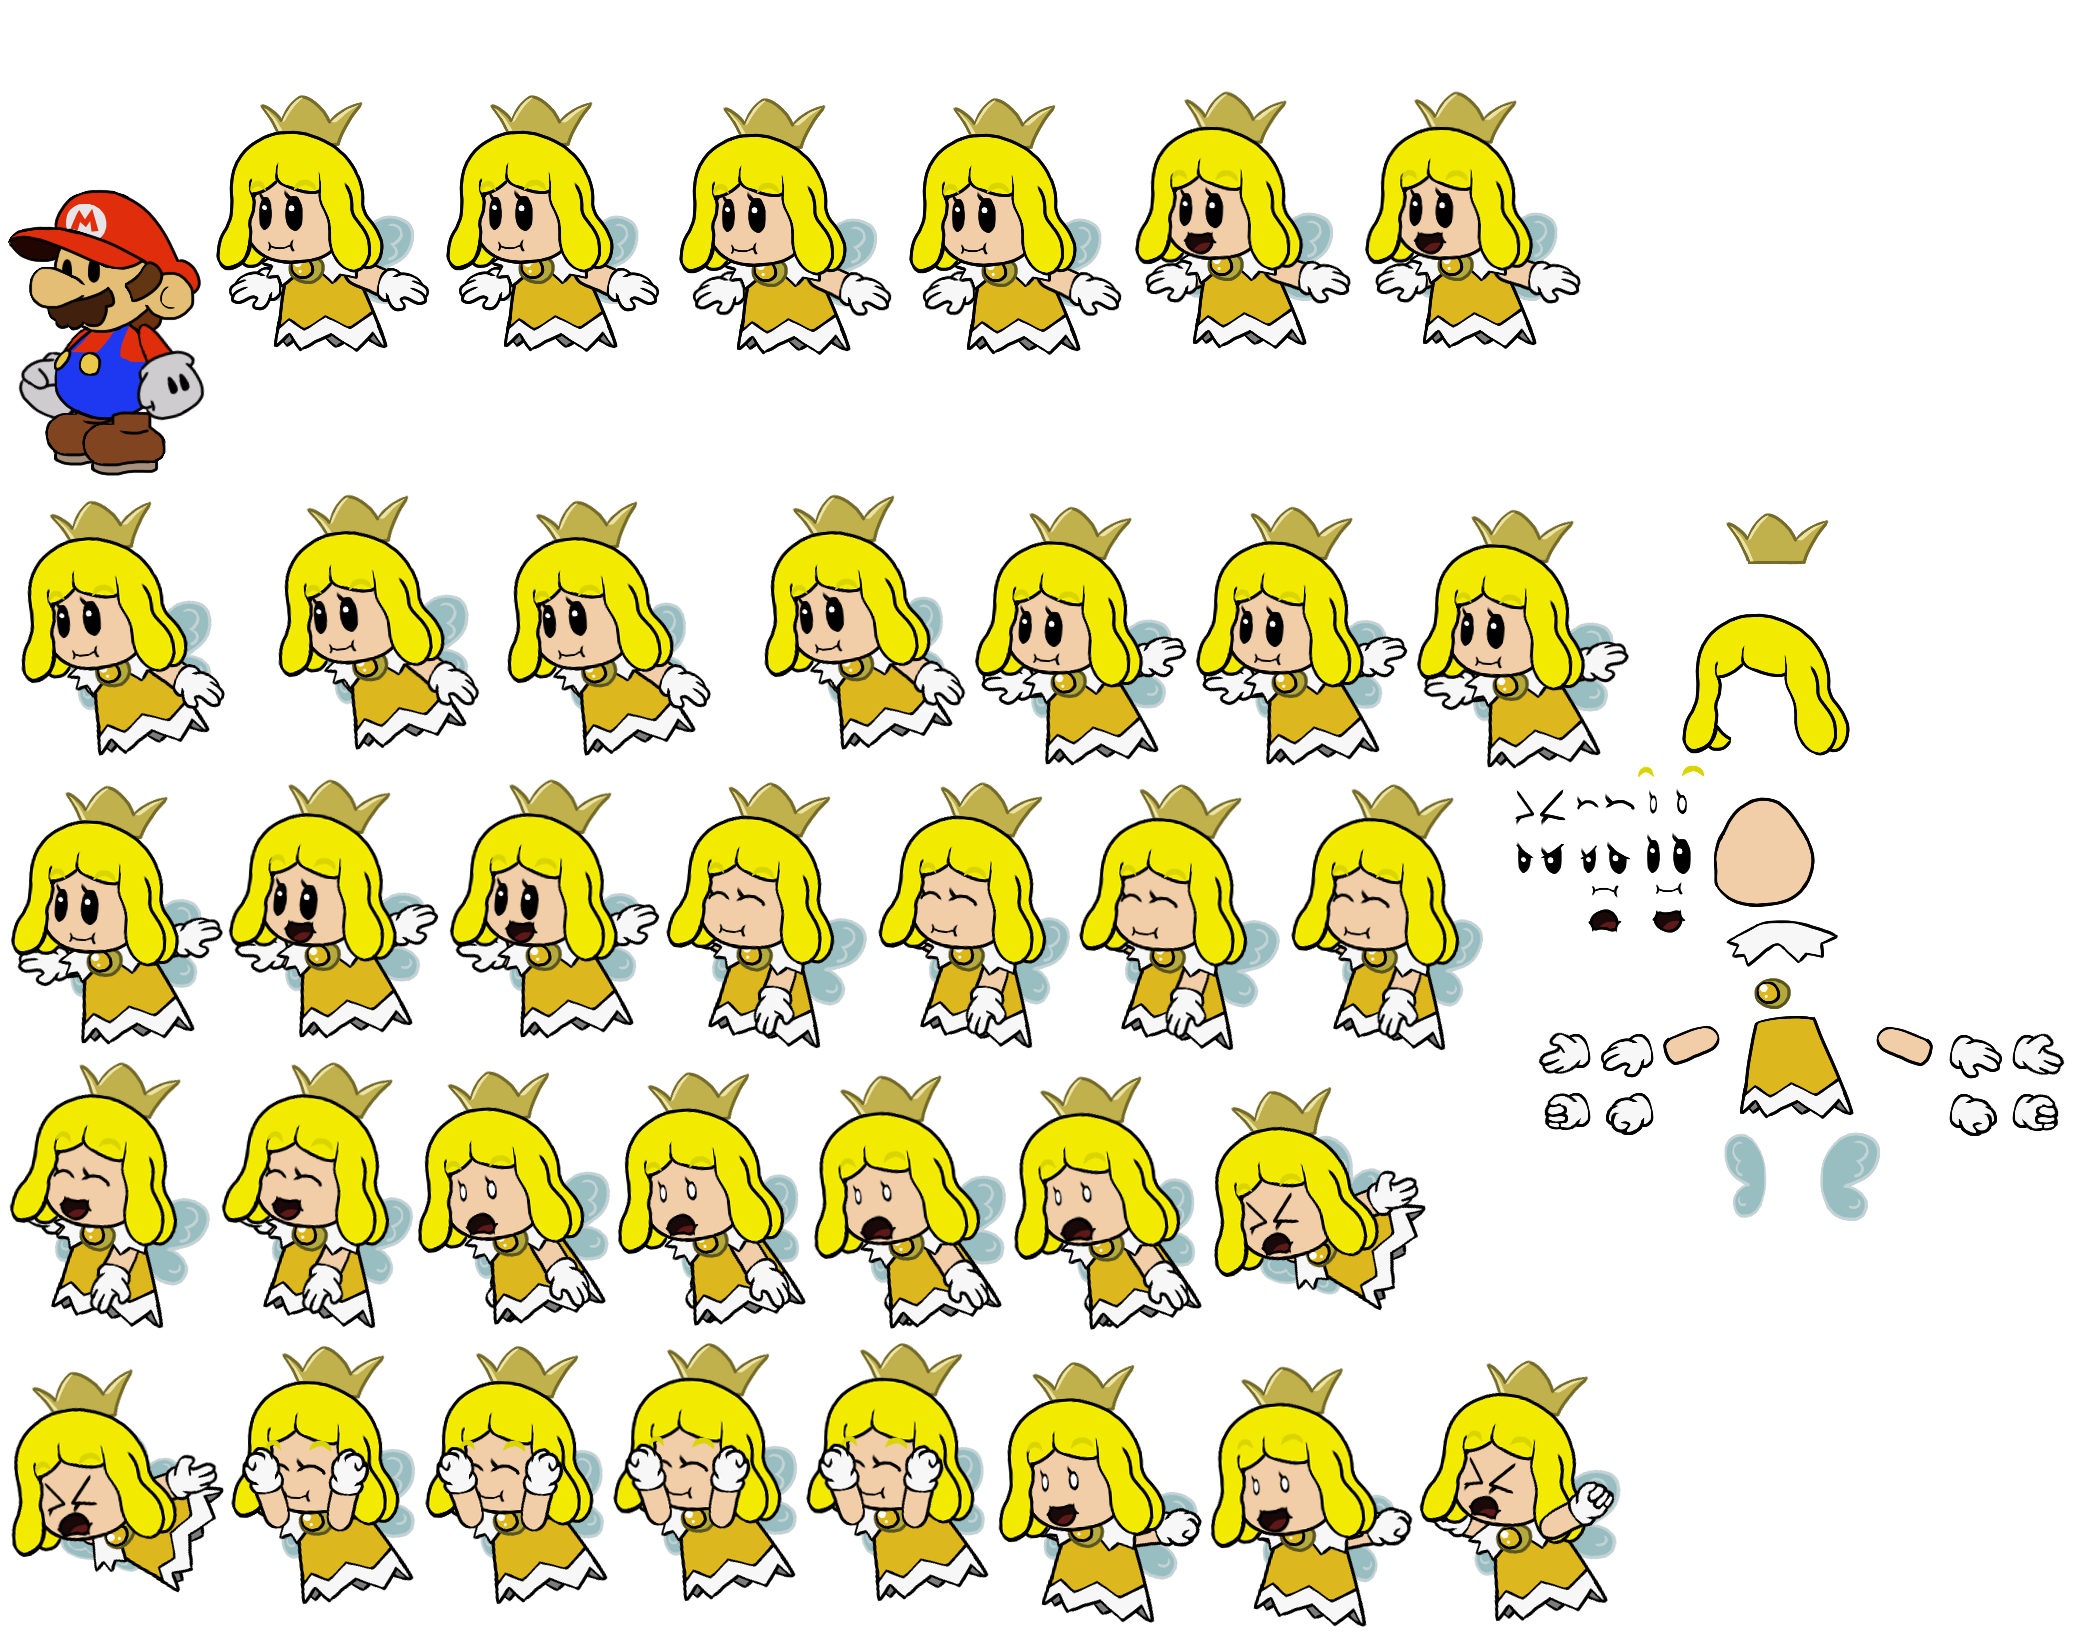 Yellow Sprixie Princess (Paper Mario-Style)